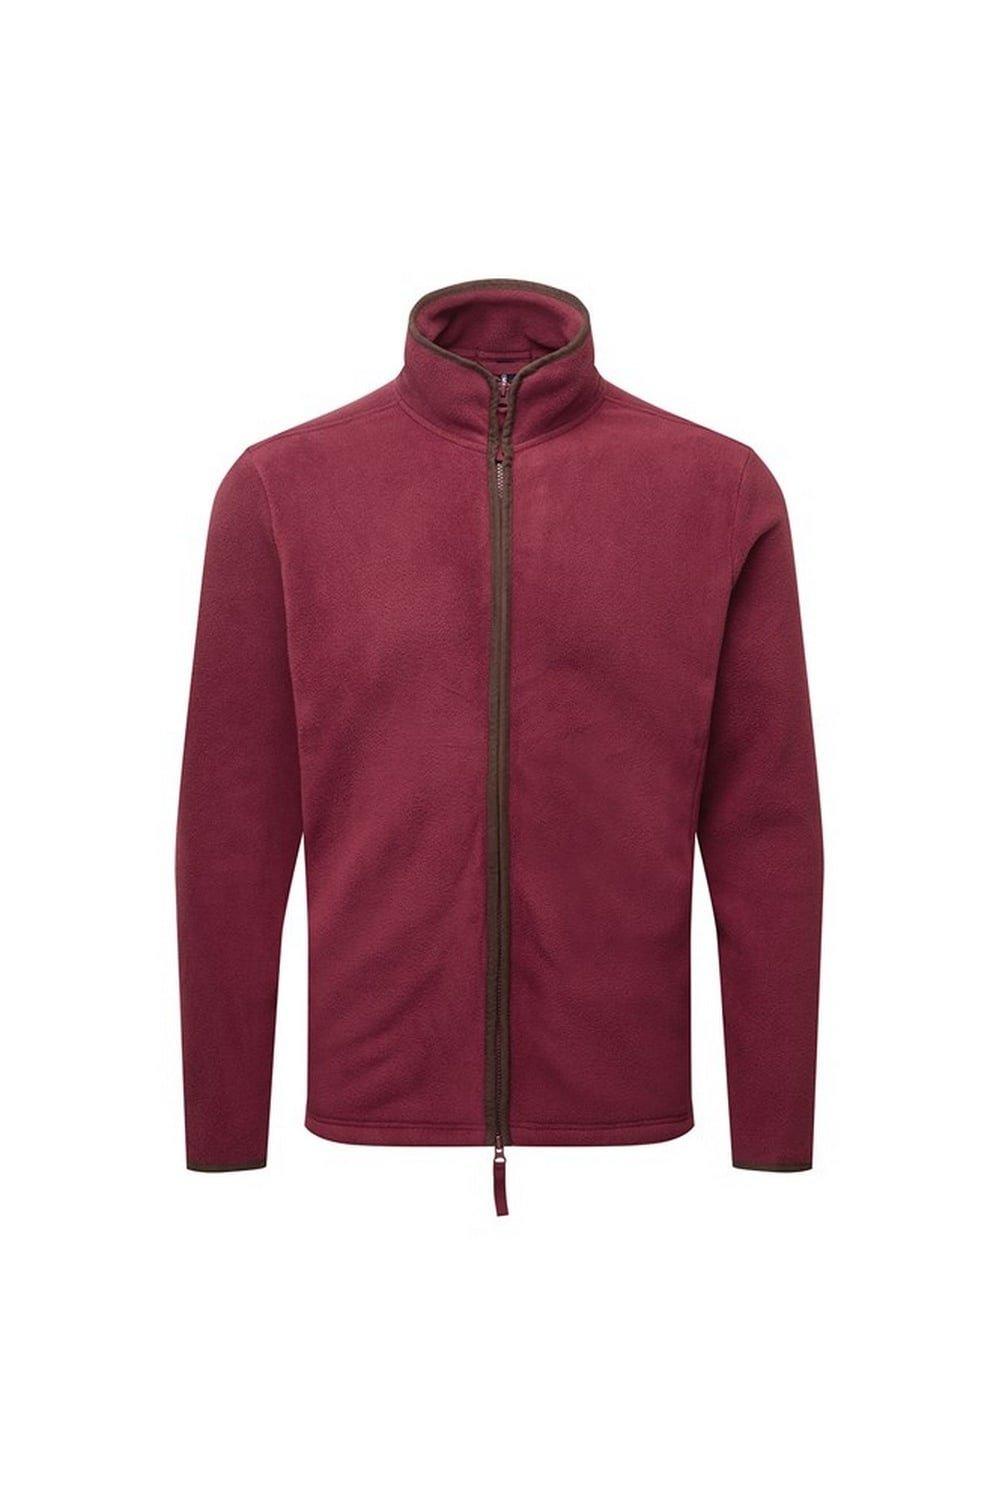 Флисовая куртка Artisan Premier, красный чехол mypads странный чертик с длинными пальцами для meizu m5 note задняя панель накладка бампер